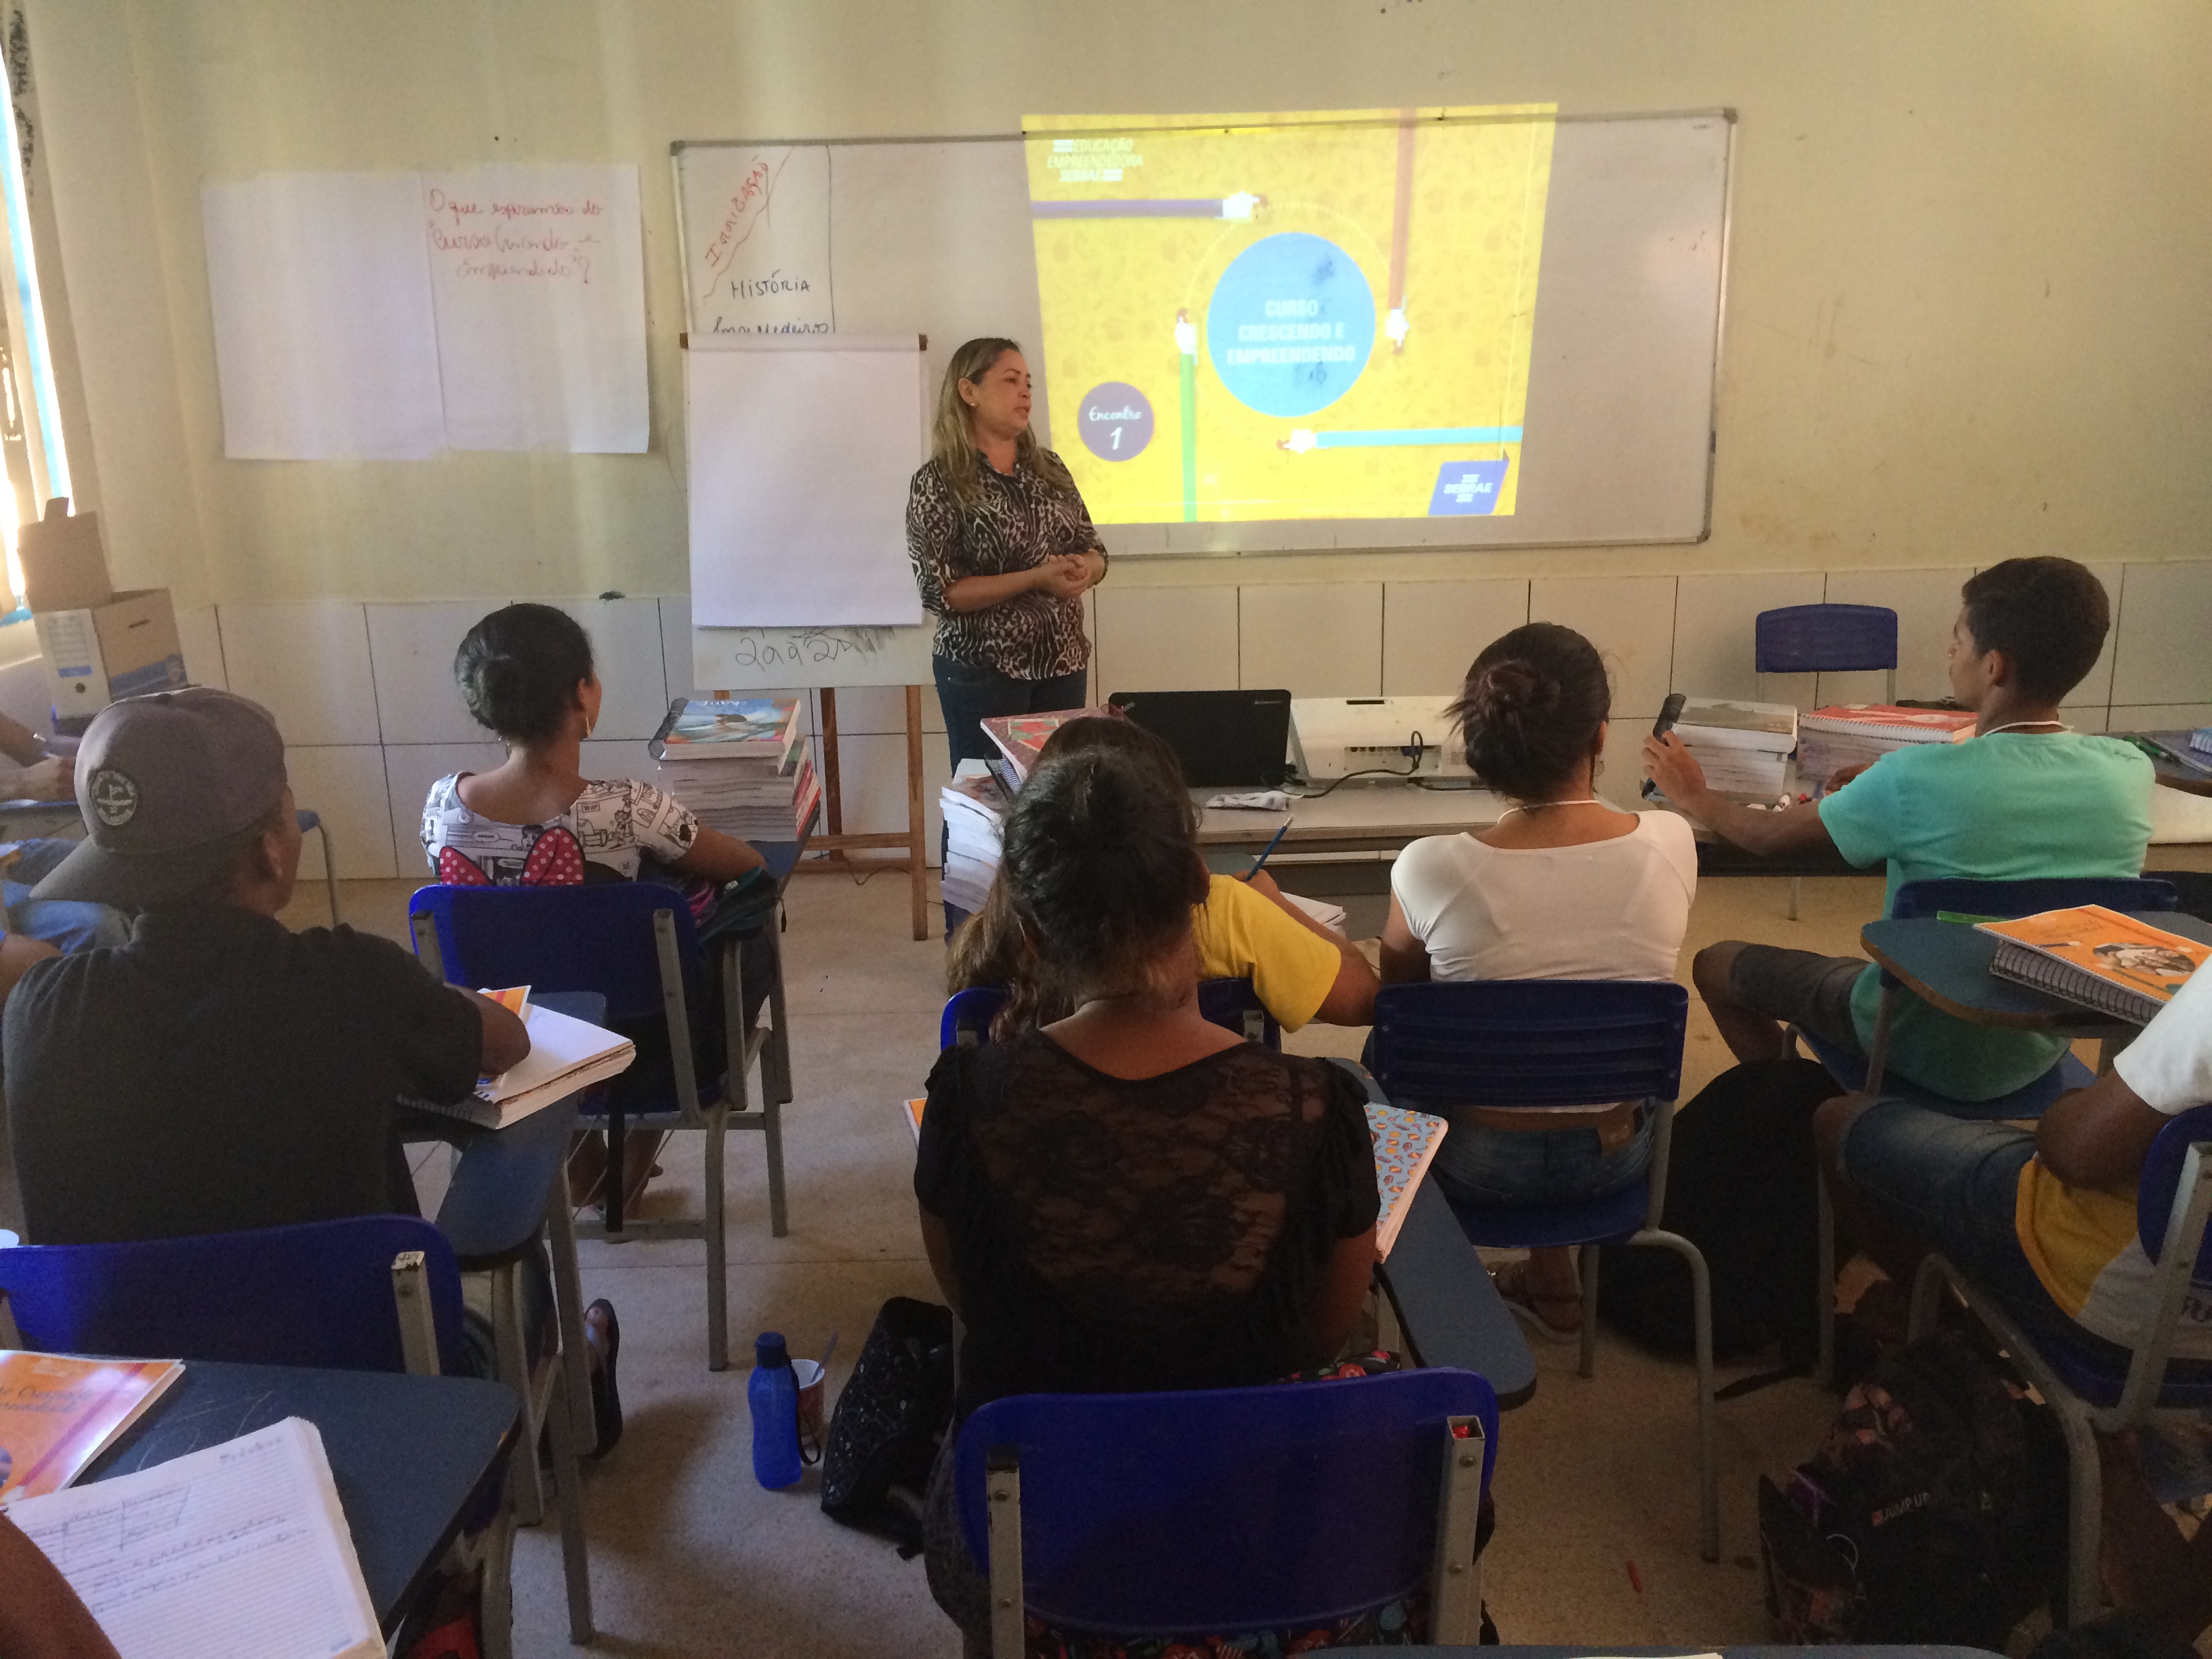 Fundação da Juventude de Porto Nacional e Sebrae realizam curso sobre empreendedorismo em escolas 2